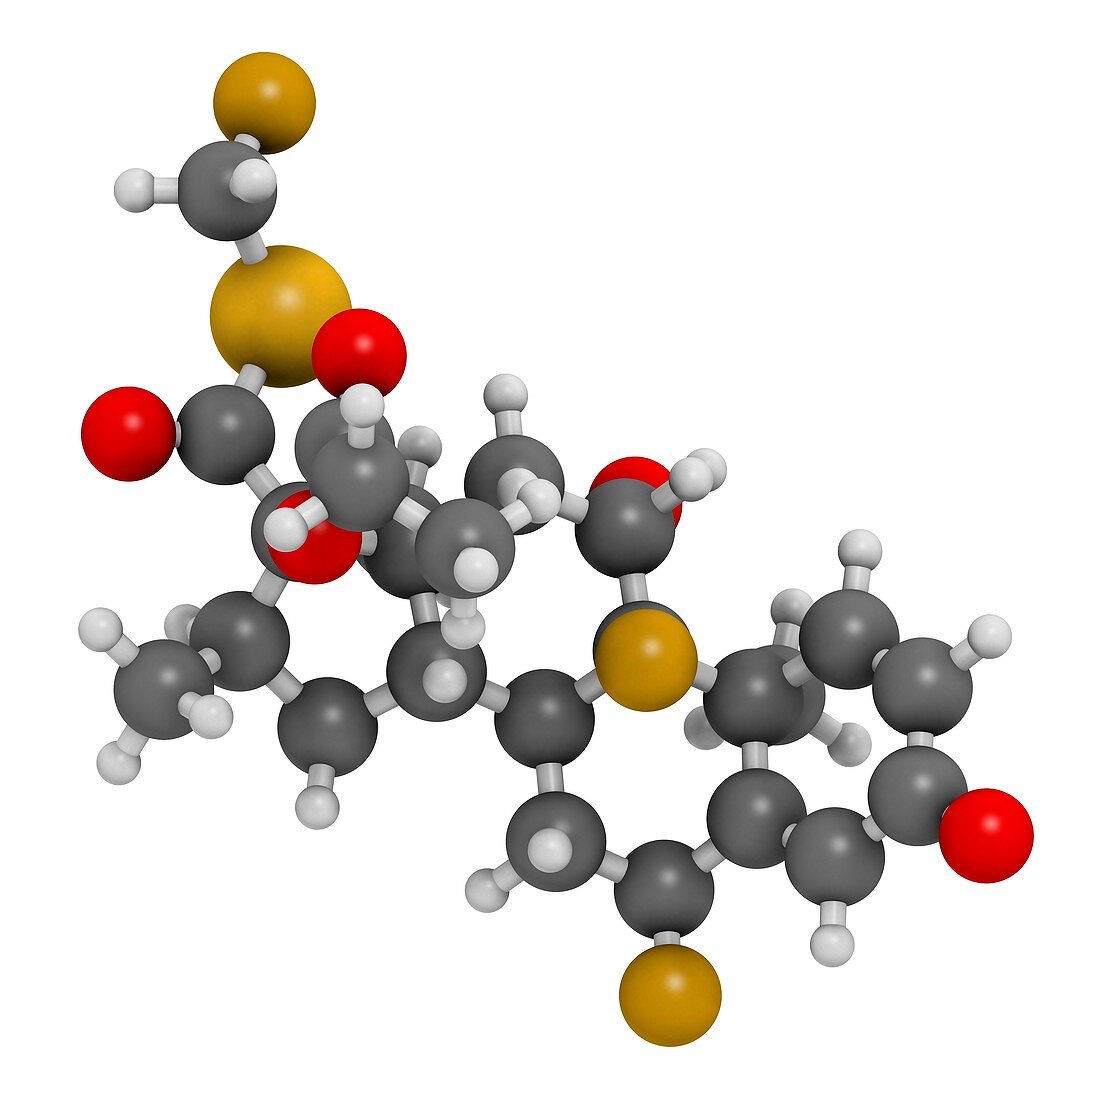 Fluticasone corticosteroid drug molecule